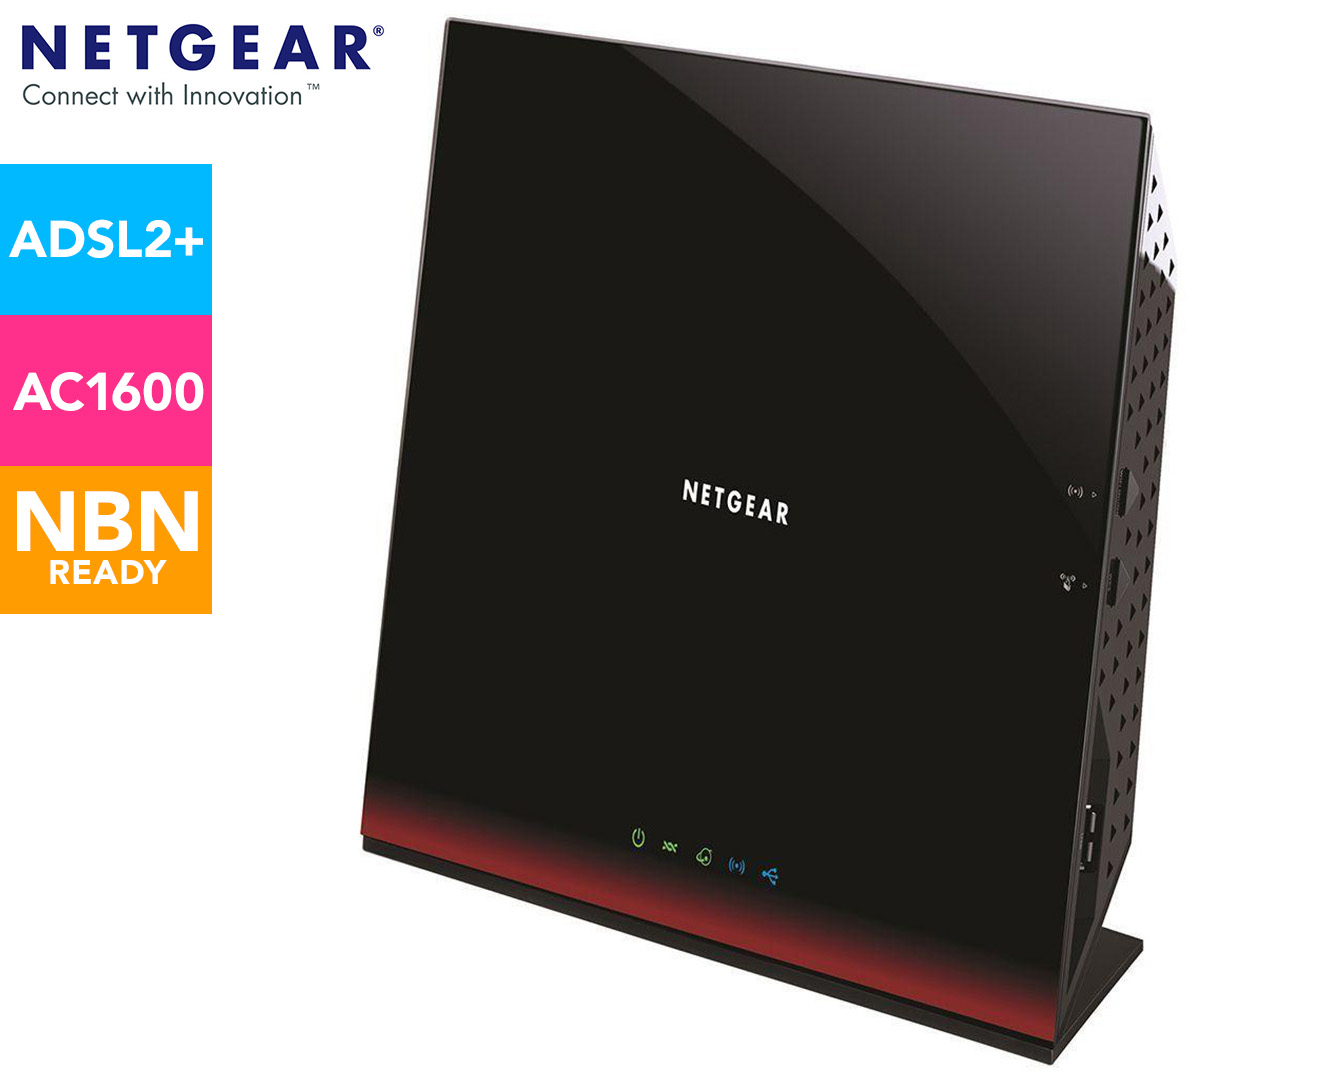 NETGEAR D6300 802.11AC Wireless Dual Band WiFi Modem Router - Black